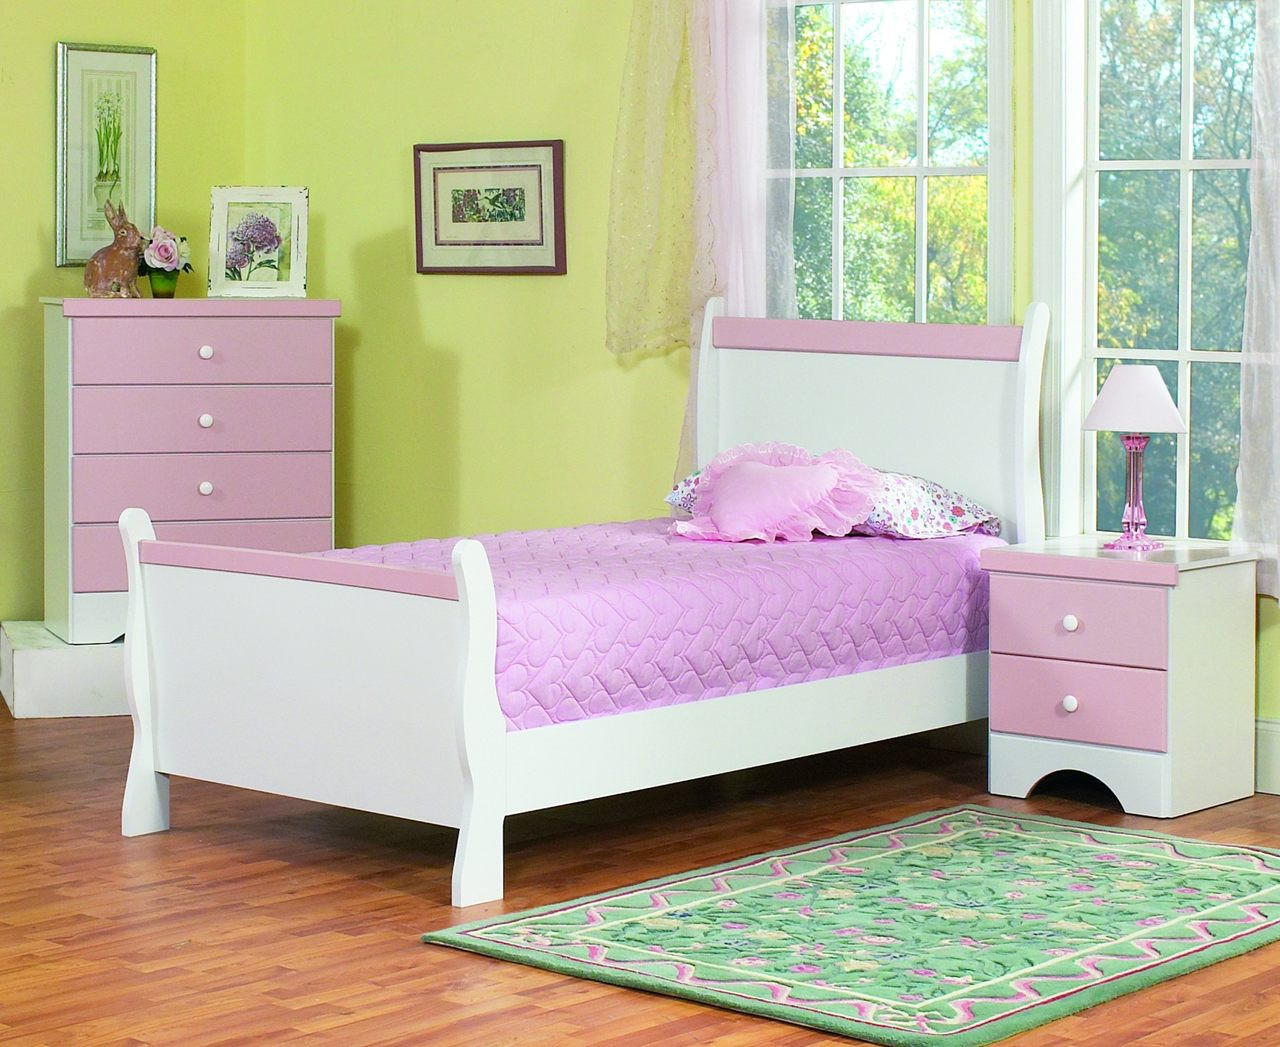 Kids Bedroom Furniture Sets
 The Captivating Kids Bedroom Furniture Amaza Design